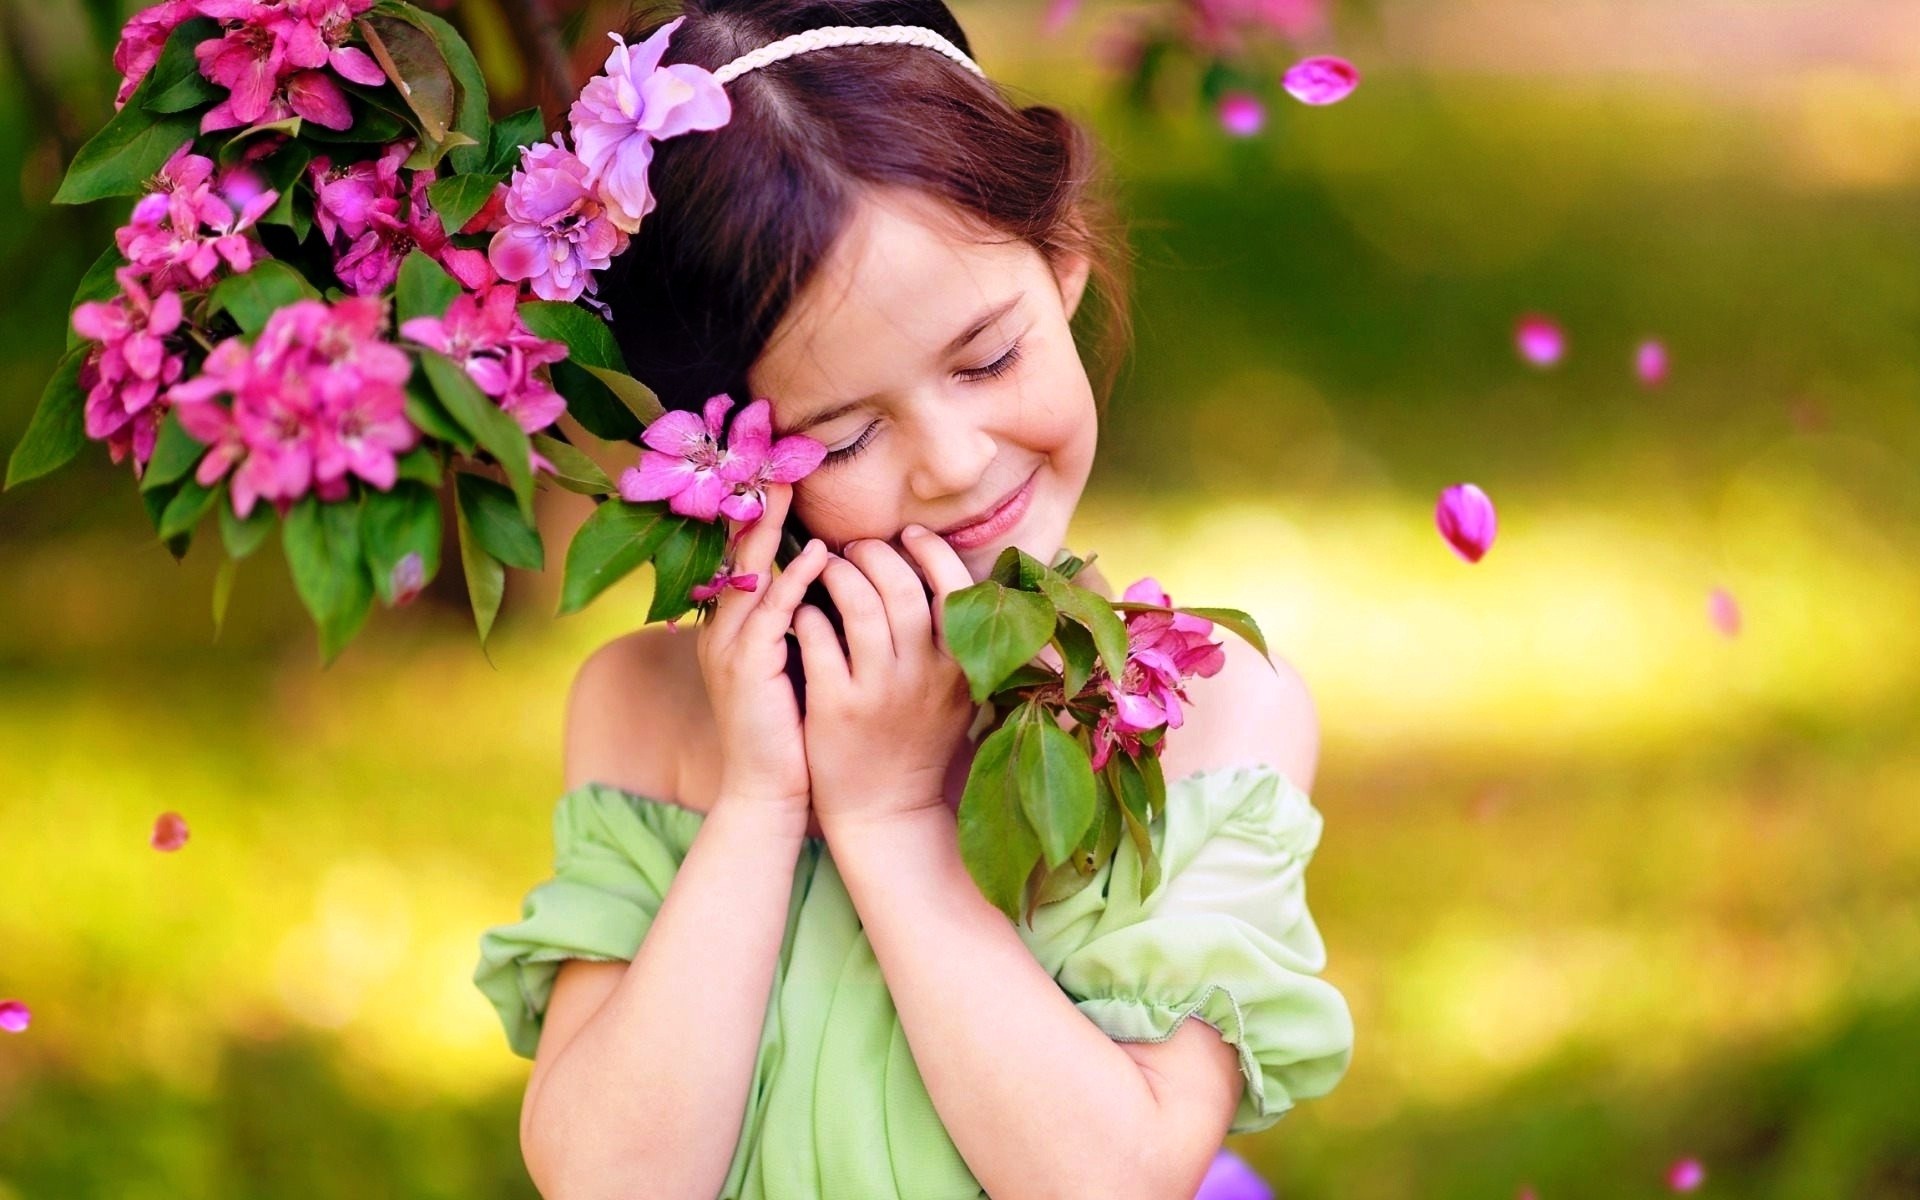 fondos de pantalla full hd girl para móvil,naturaleza,niño,rosado,flor,belleza